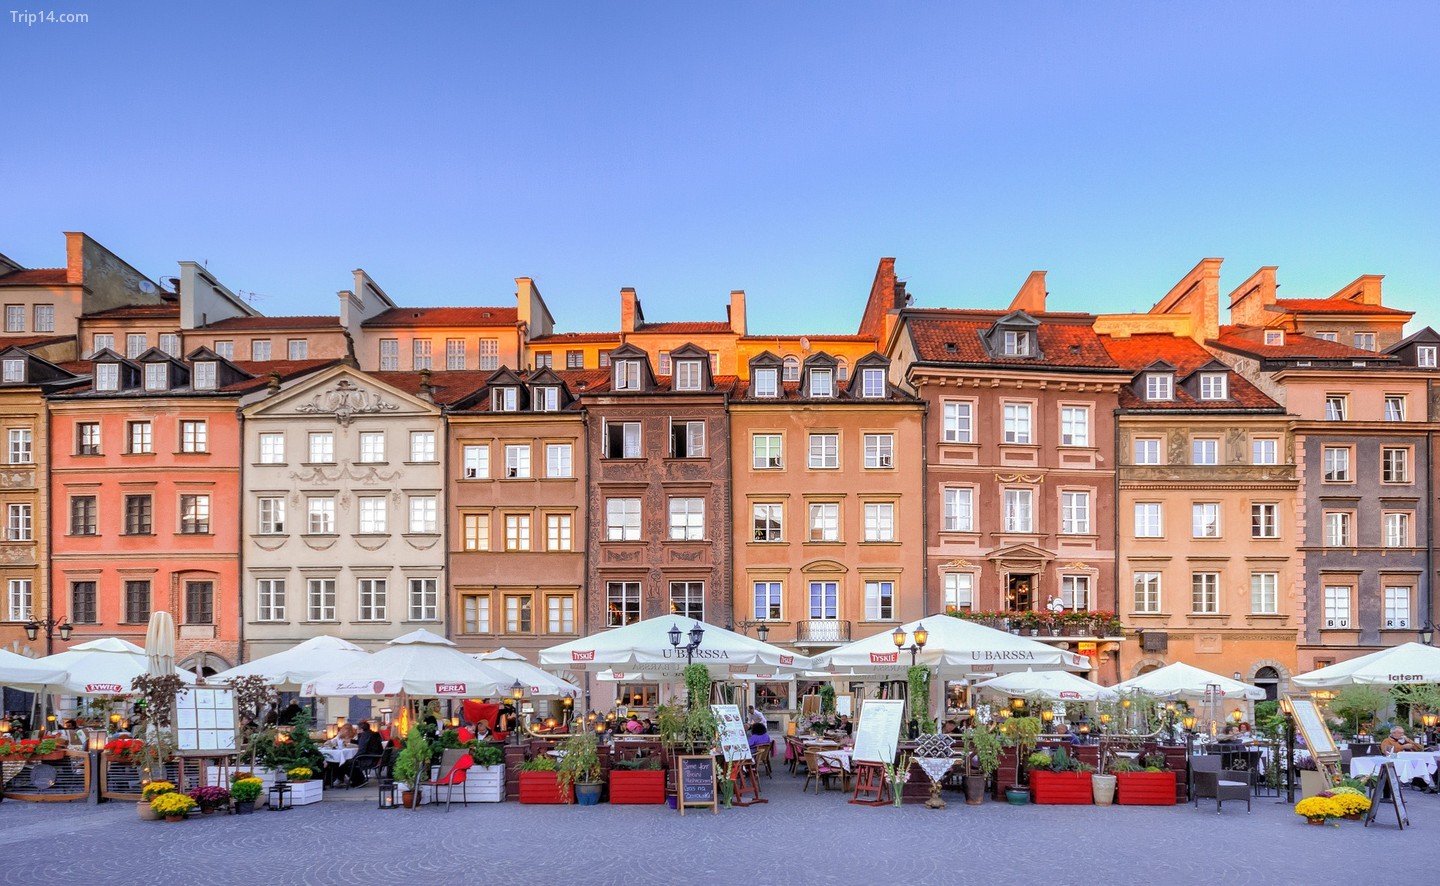 Warsaw, Ba Lan…